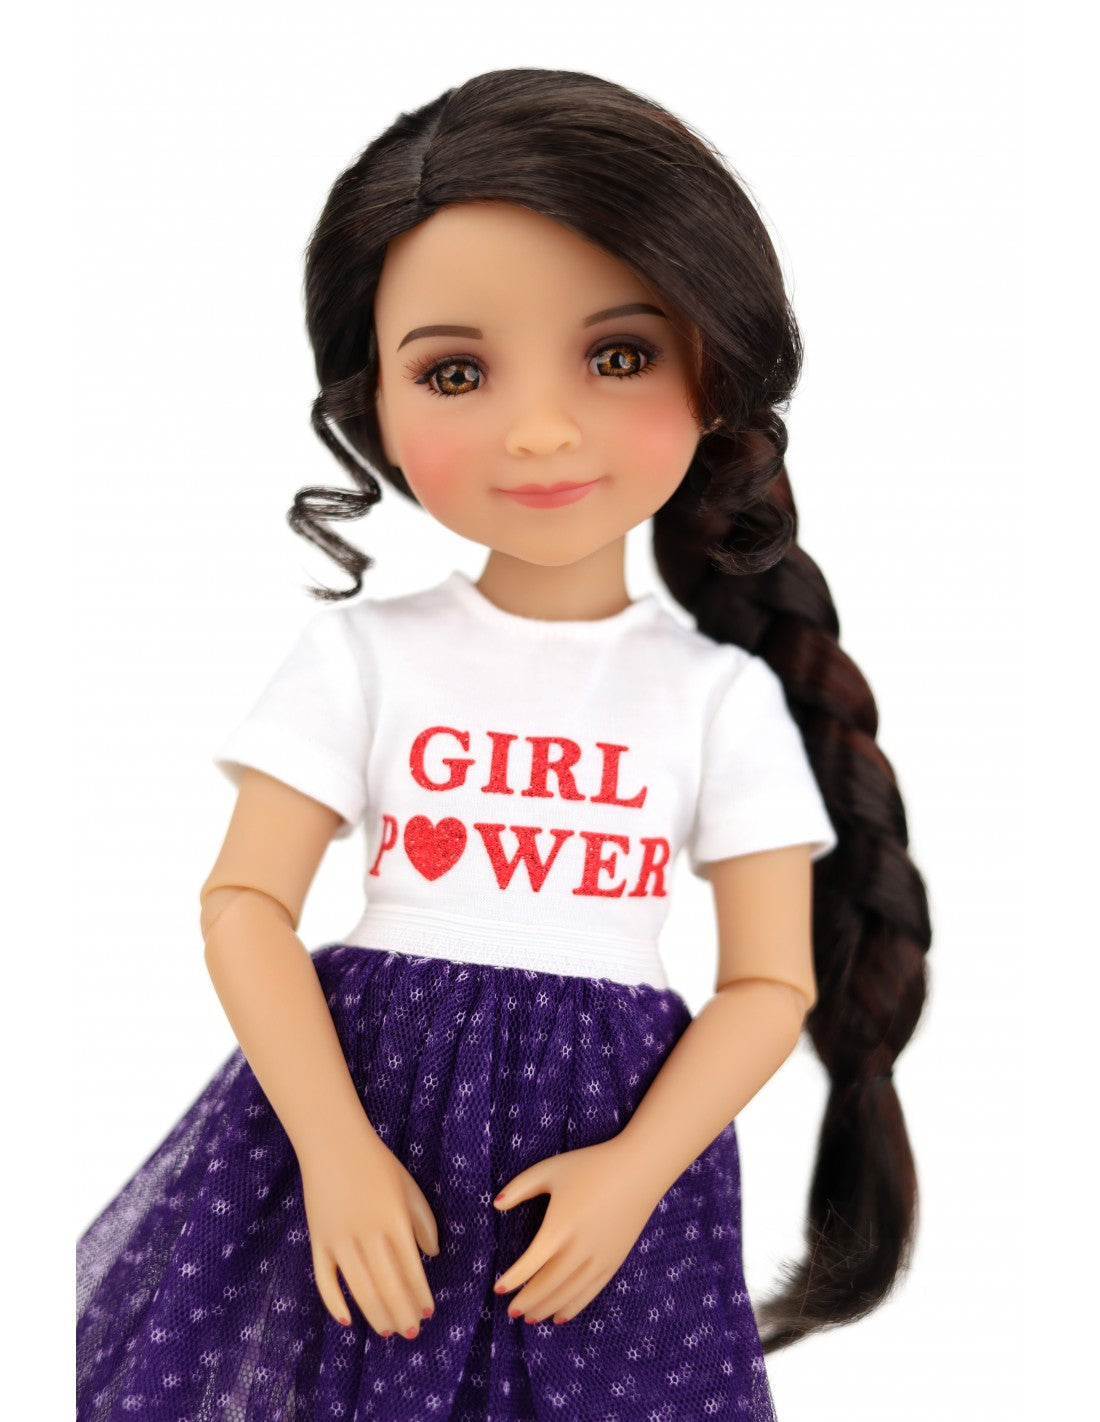 Girl Power Freida - Ruby Red Fashion Friend doll